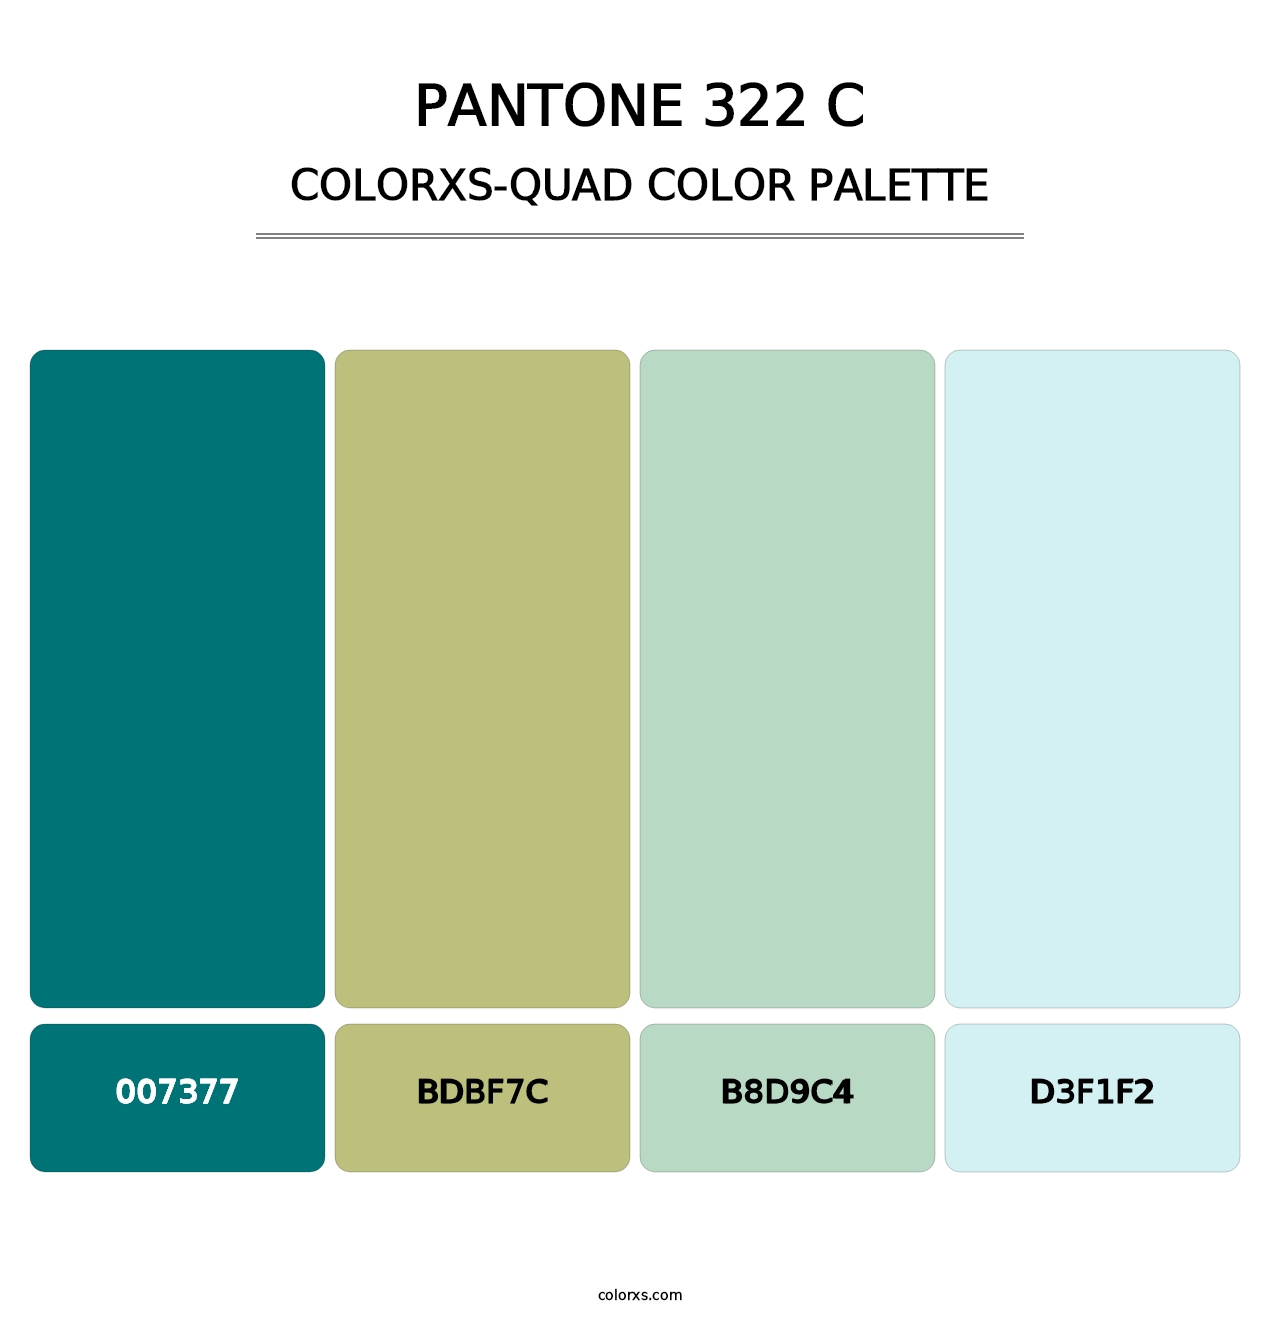 PANTONE 322 C - Colorxs Quad Palette